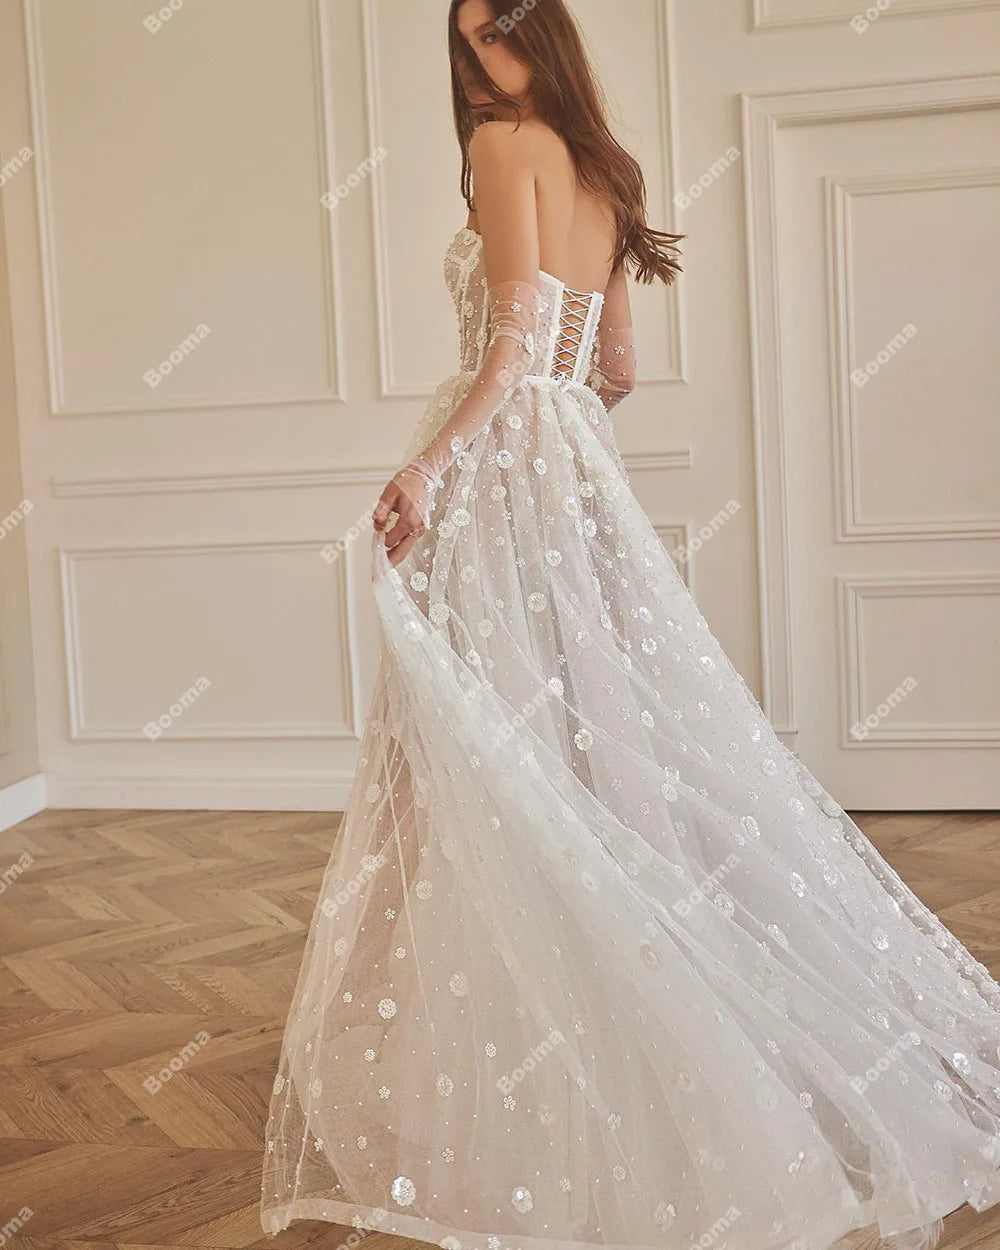 Boho romantique a-ligne robes de mariée chérie paillettes fleurs Tulle mariées robes de soirée jambe fente à lacets longue robe de mariée